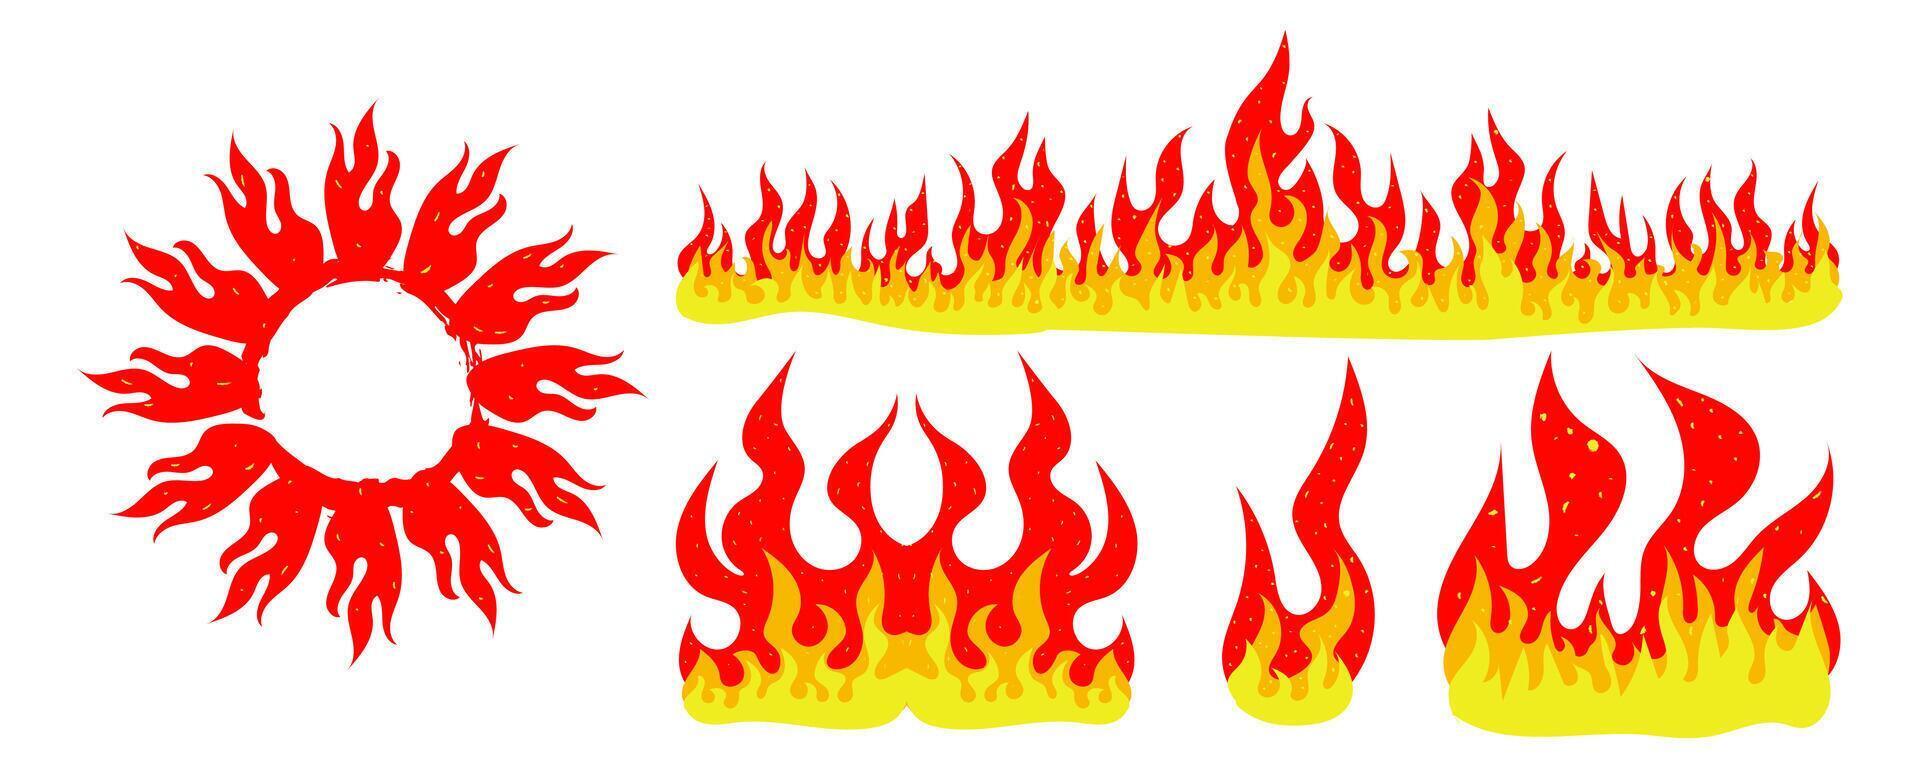 impostato di fuoco cartone animato illustrazioni, fuoco corone, fuoco cornici, fuoco elementi, grunge fuoco. vettore illustrazione per collage, manifesti, striscioni.